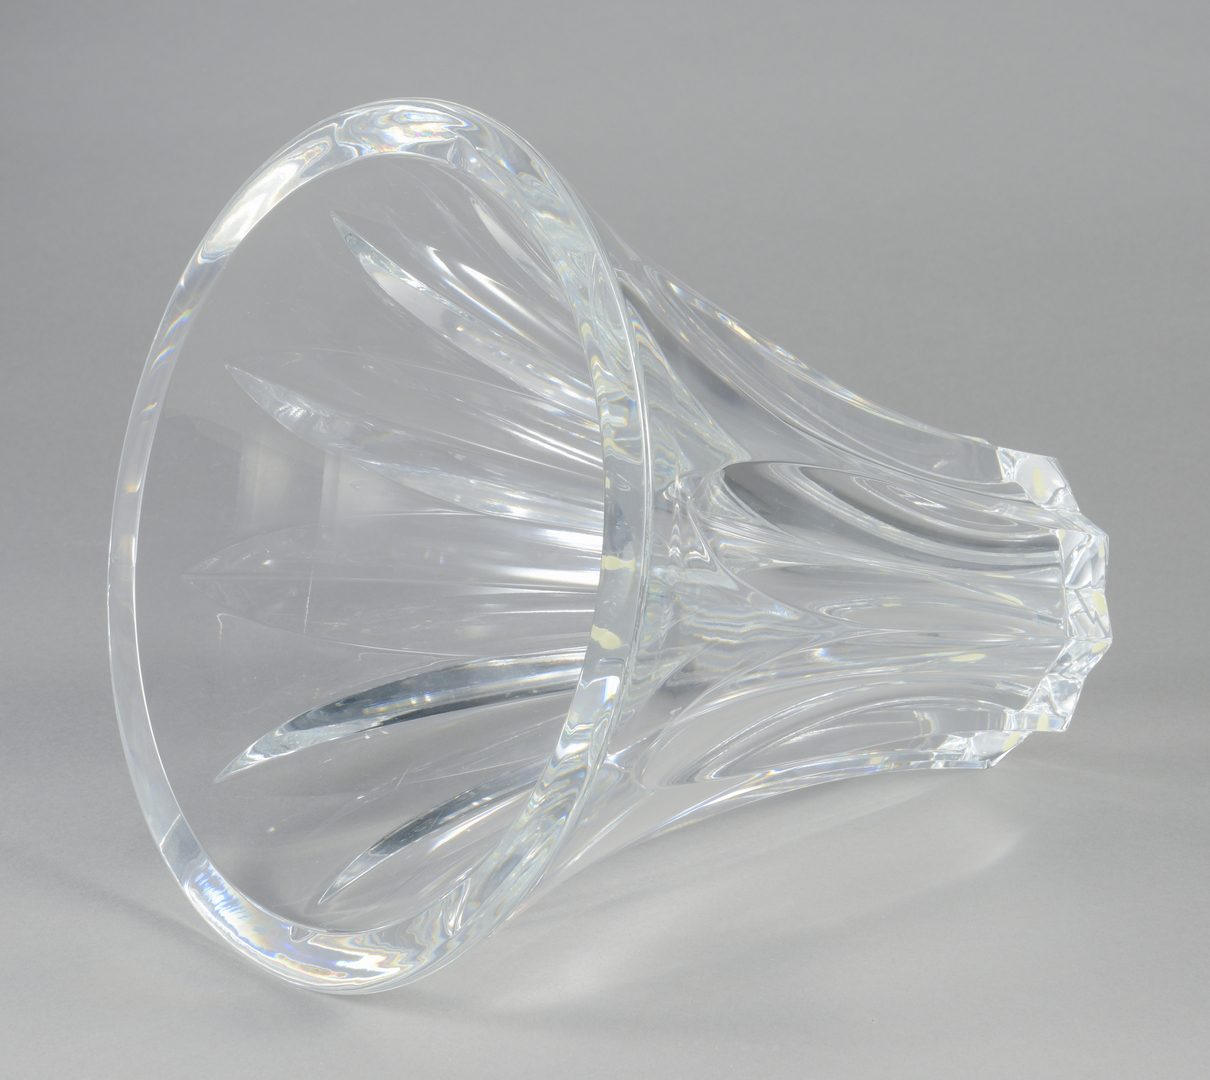 Lot 696: Baccarat Large Crystal Vase